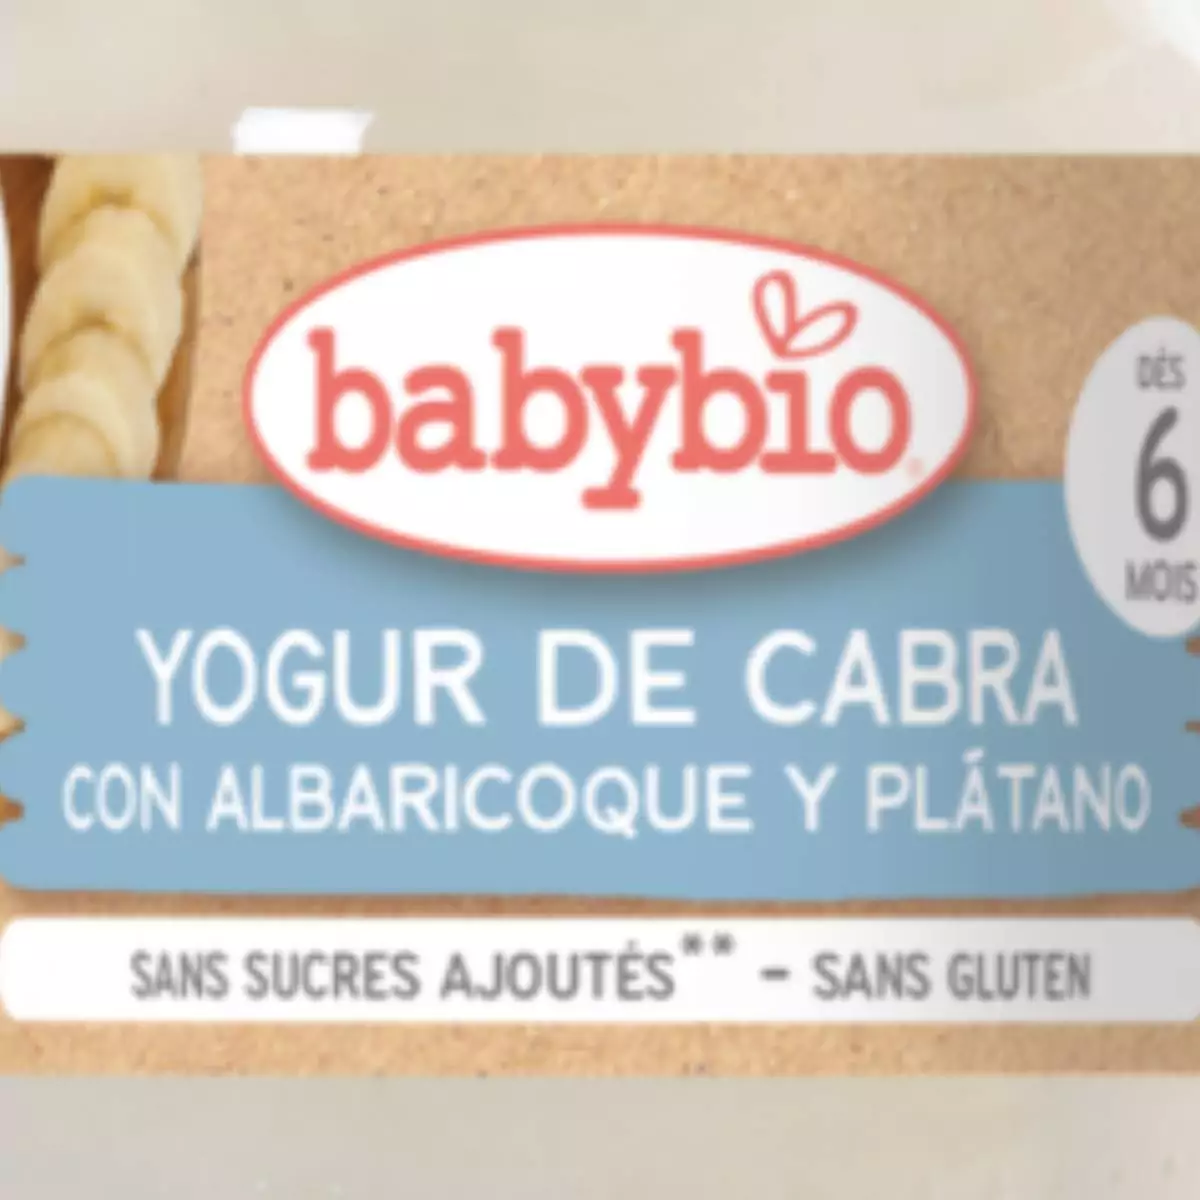 Yogur de Cabra Albaricoque y Plátano 6 meses 2 uds